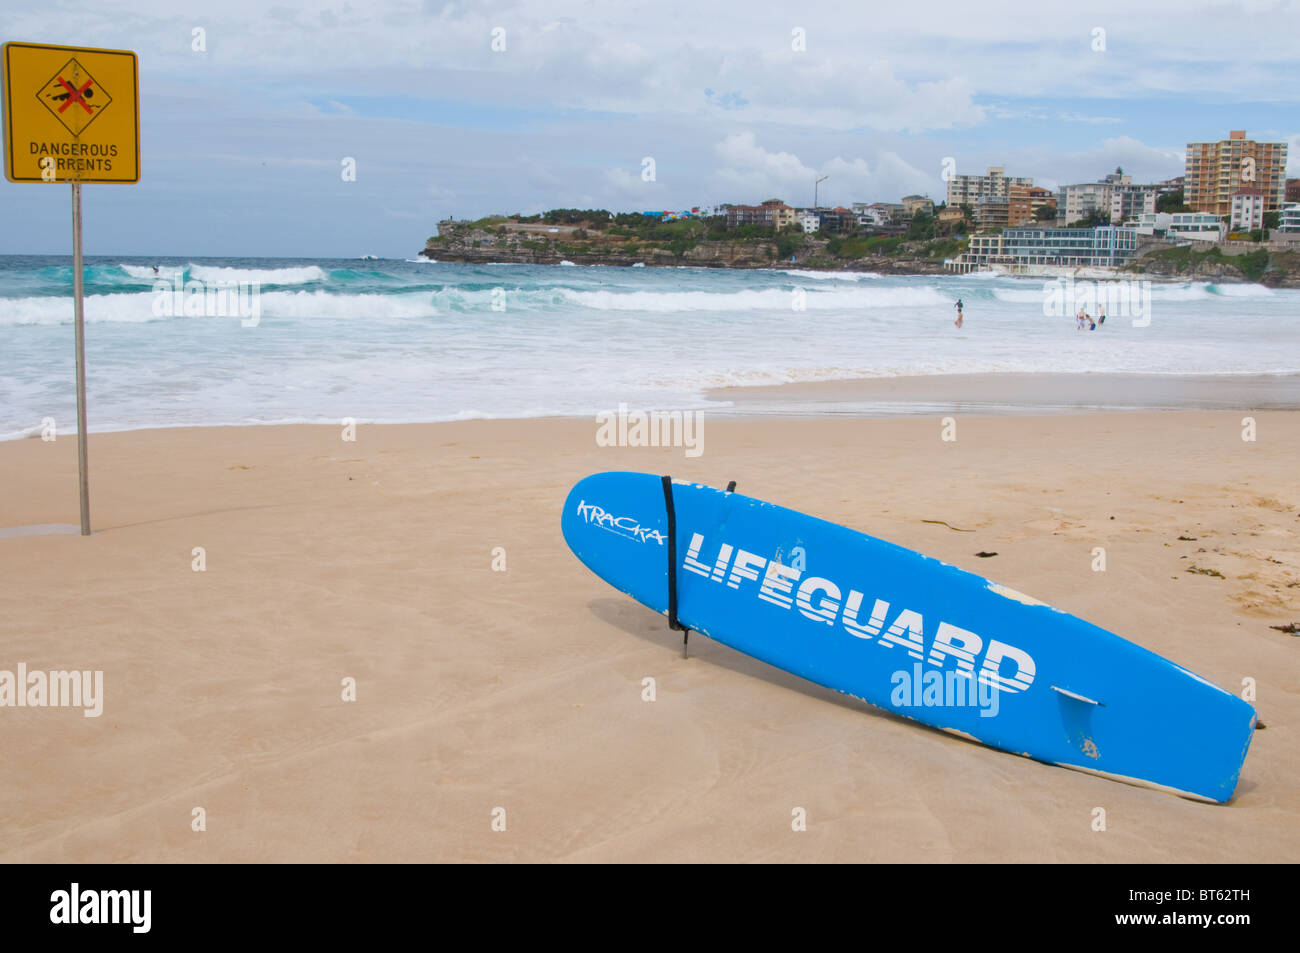 Bondi Beach, Sydney Australien Aussie Surfen Surfer blaue Meer Waveboard zu Fuß aus großen Neoprenanzug sonnigen Tag blauen Himmel Sonnenbaden sand Stockfoto